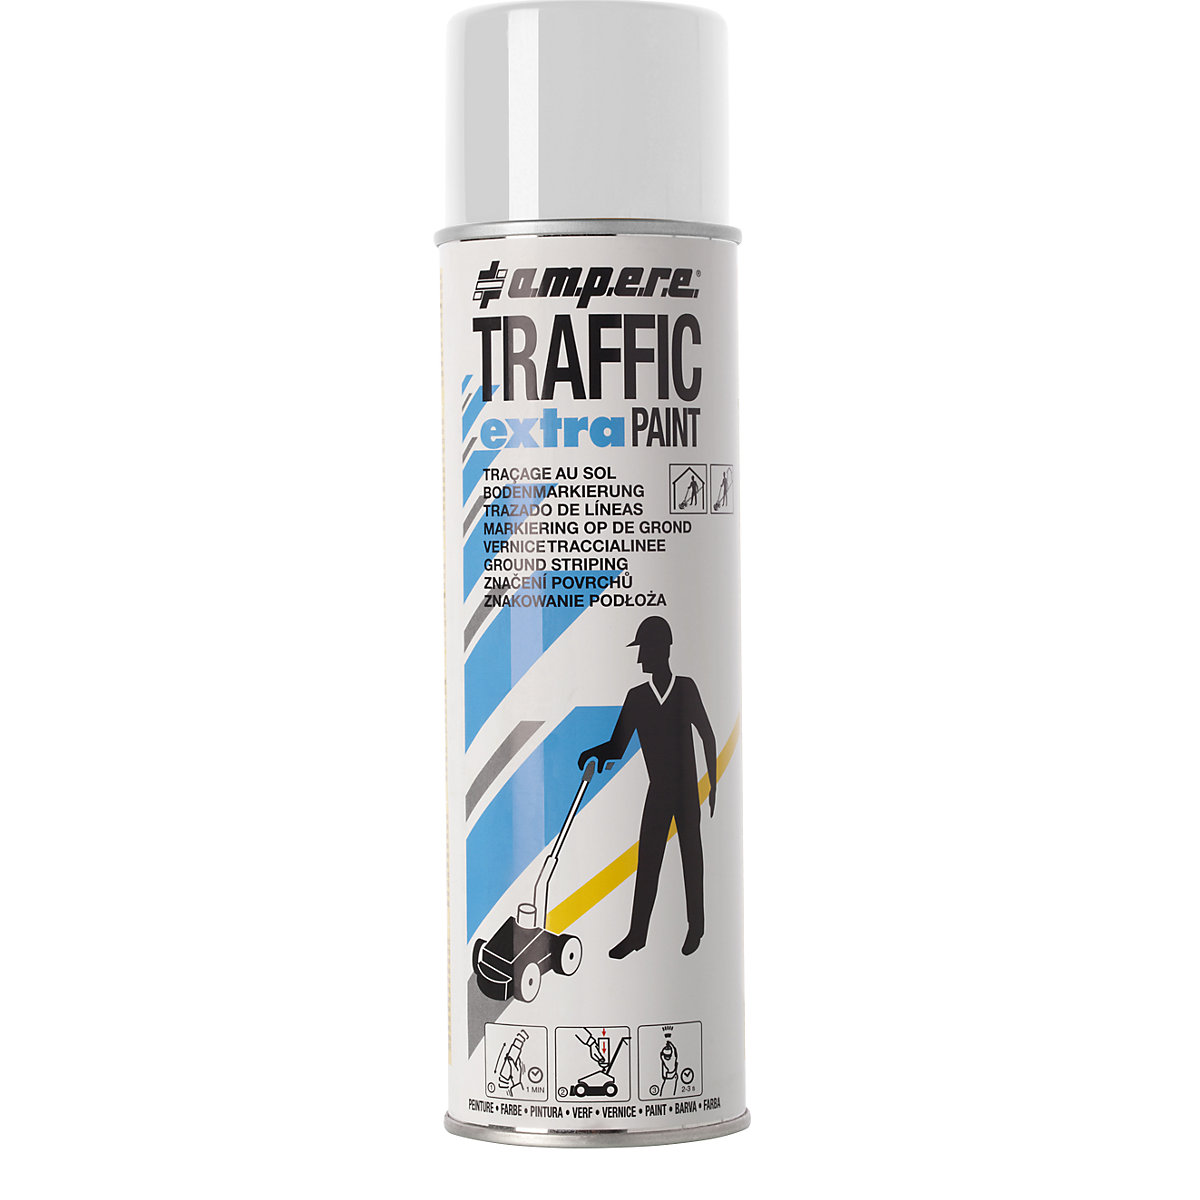 Peinture de marquage Traffic extra Paint® pour fortes contraintes – Ampere, contenu 500 ml, lot de 12 aérosols, blanc-2